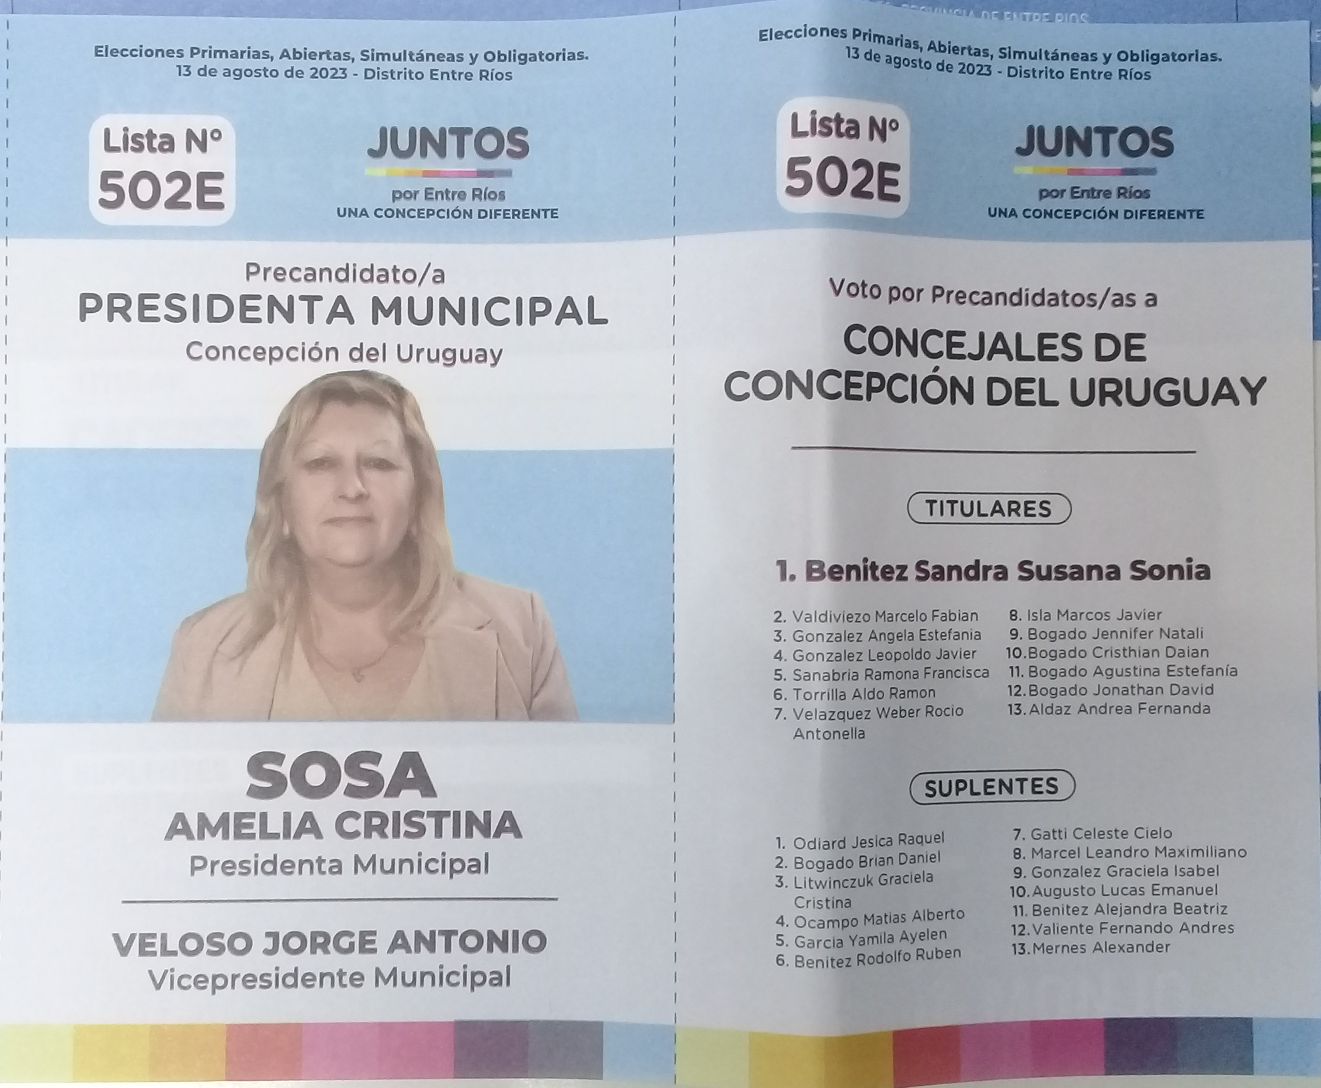 Lista 502E: Juntos por Entre Ríos - Amelia Cristina Sosa.